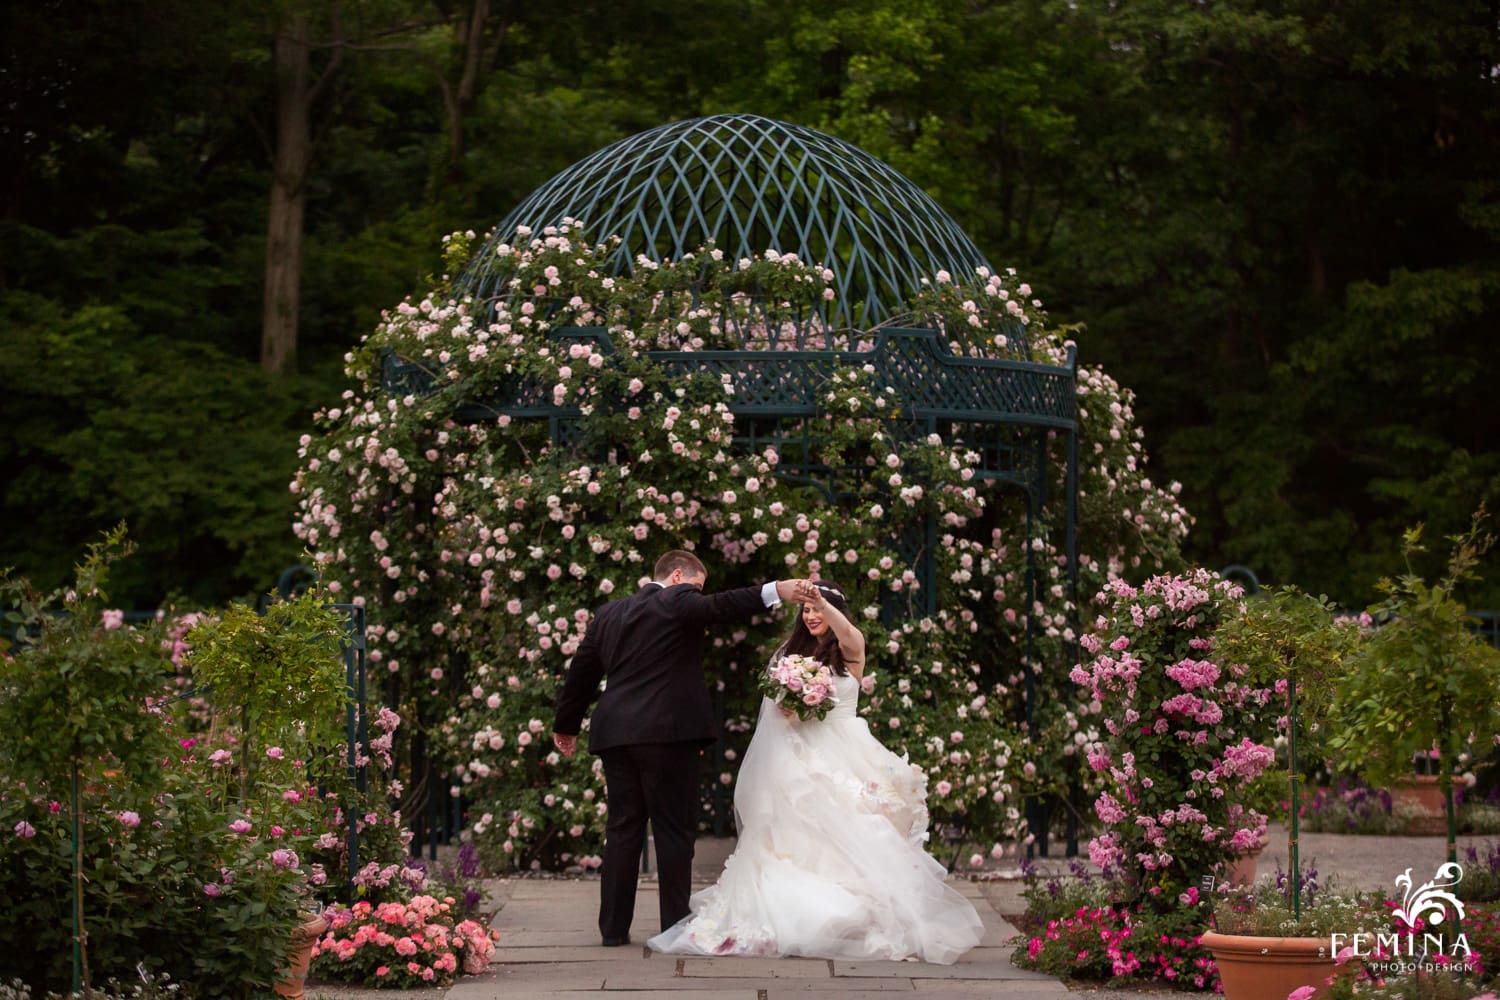 New York Botancial Garden Weddings Femina Photo Design